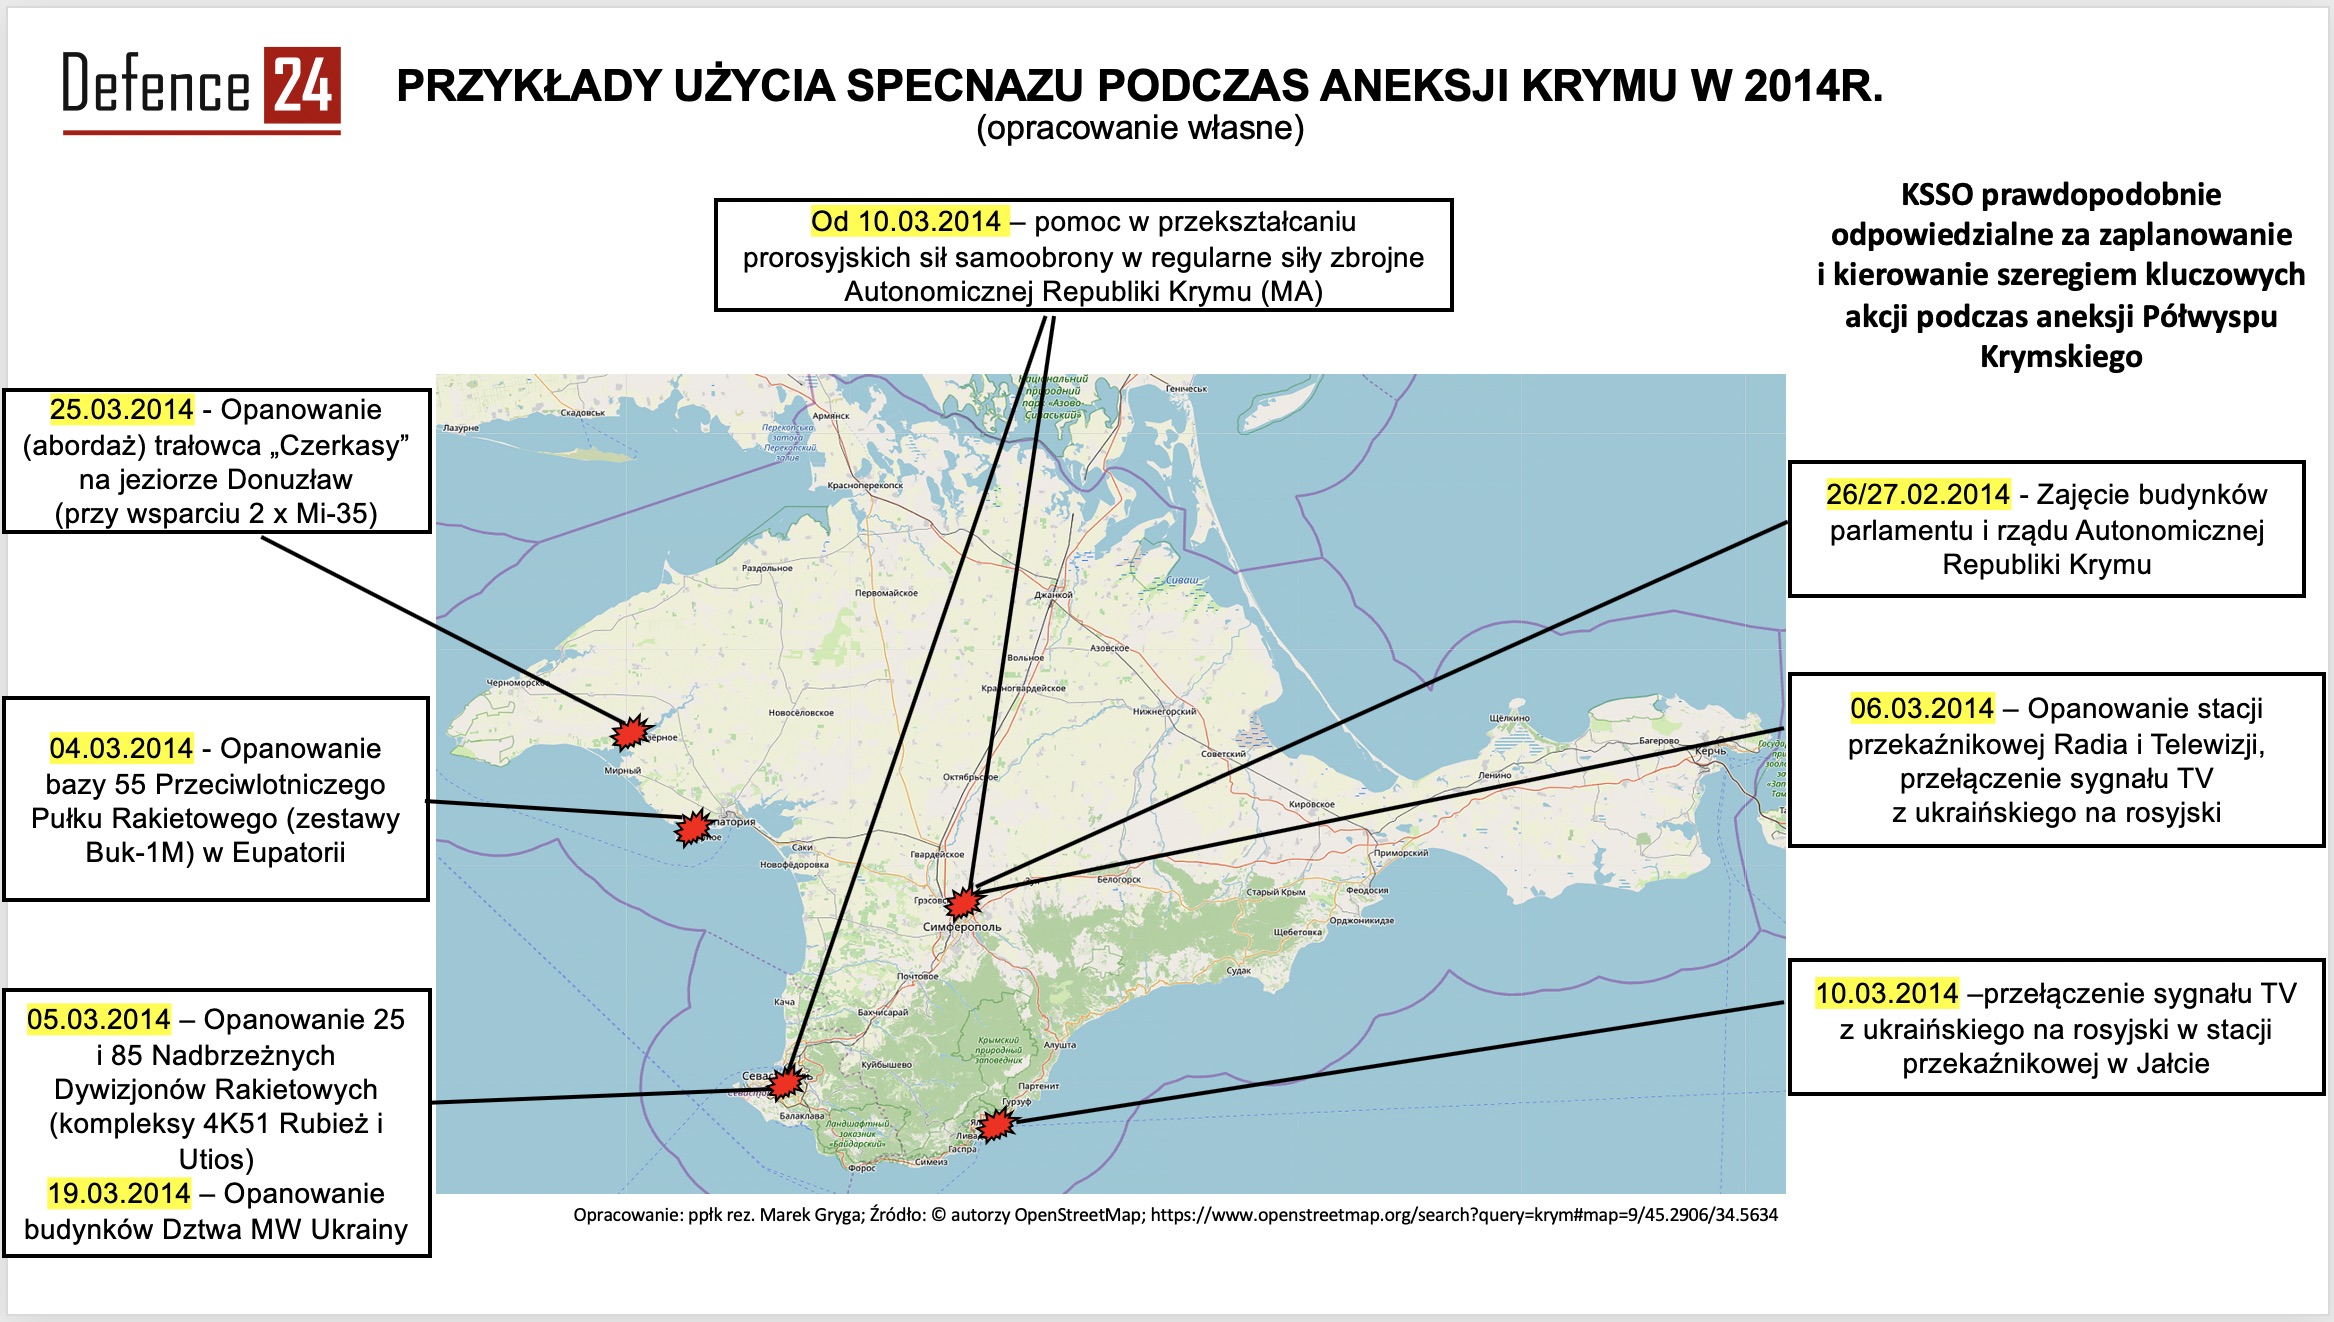 Przykłady użycia Specnazu w czasie aneksji Krymu w 2014 r. Opr. ppłk Marek Gryga